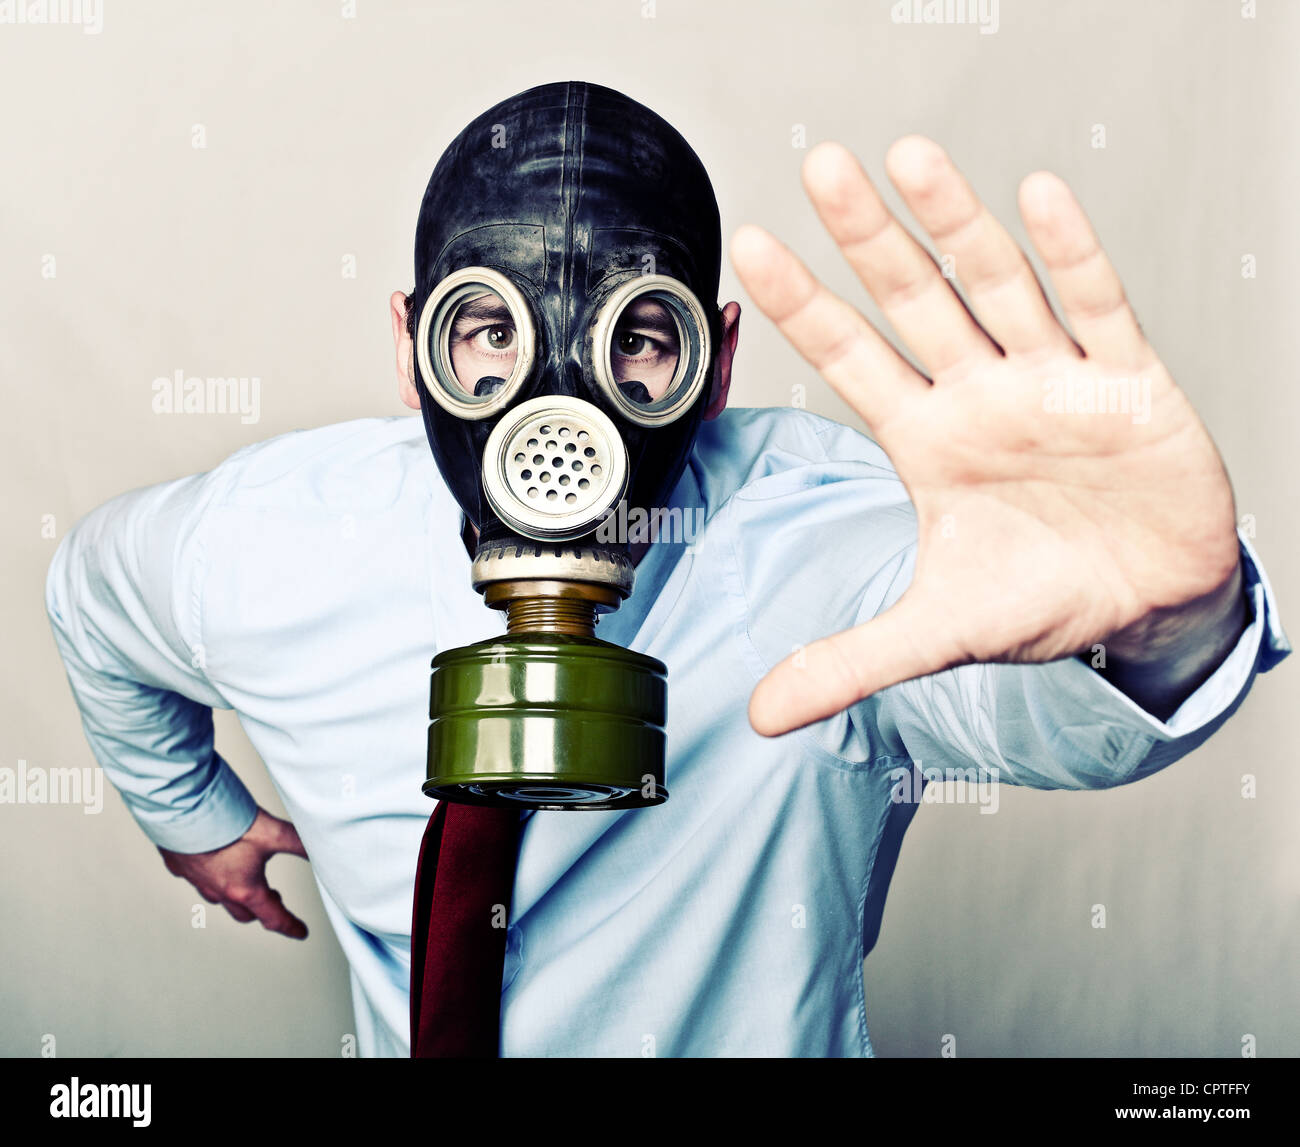 Ritratto di uomo con maschera a gas pongono in esecuzione Foto Stock